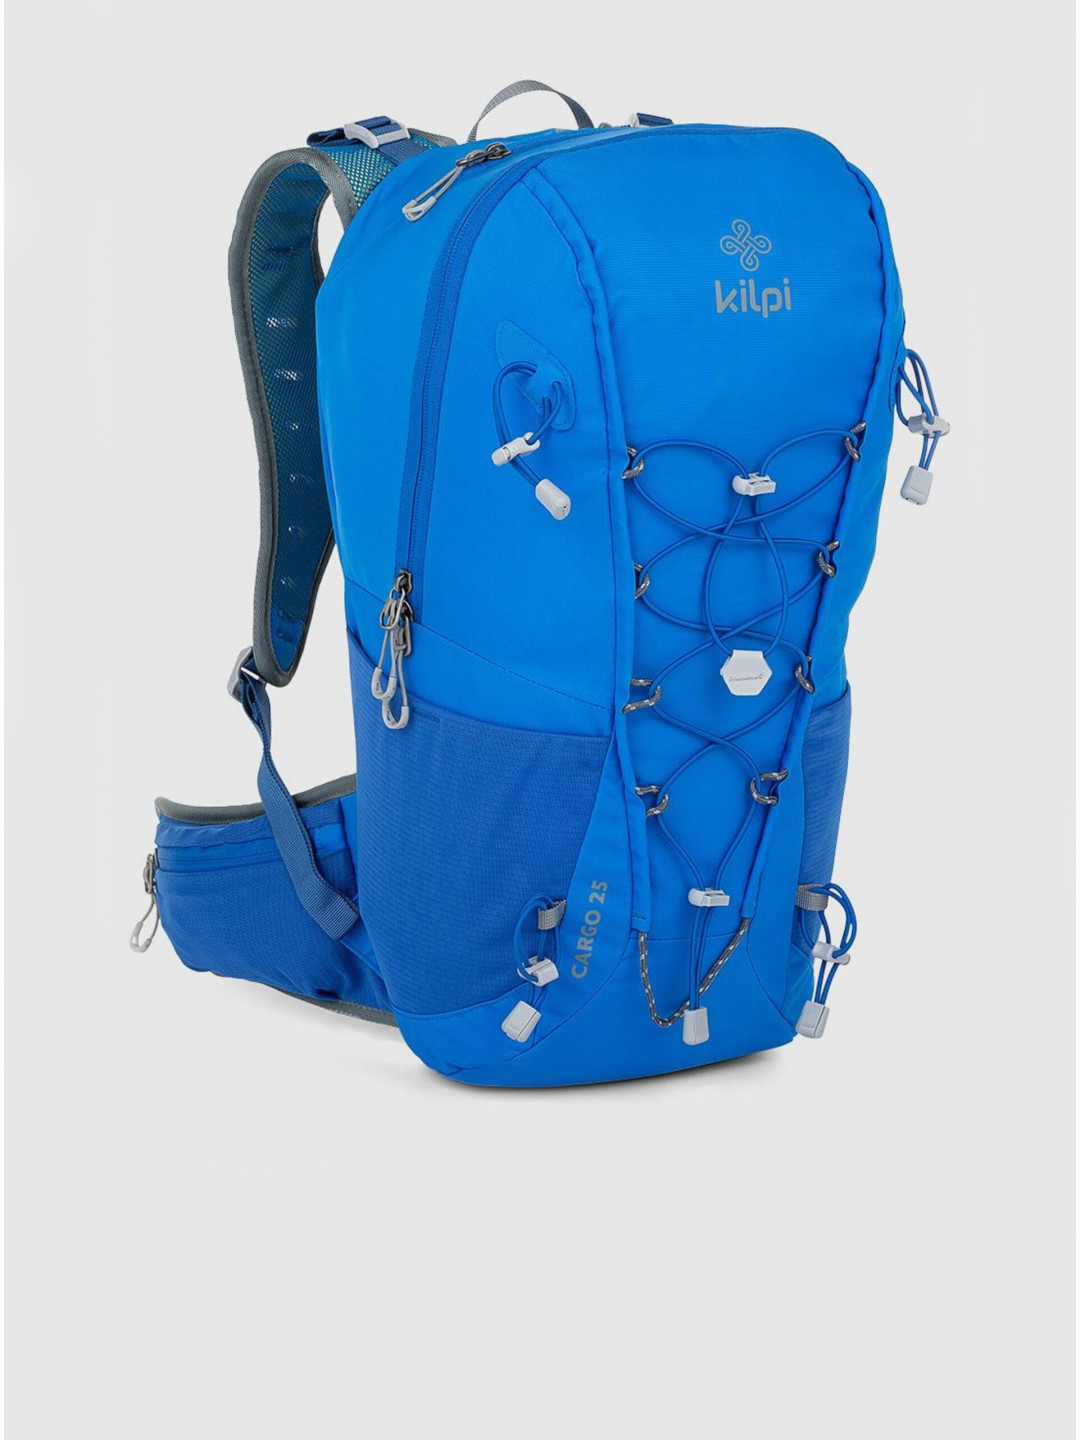 Modrý unisex sportovní batoh Kilpi CARGO 25 l